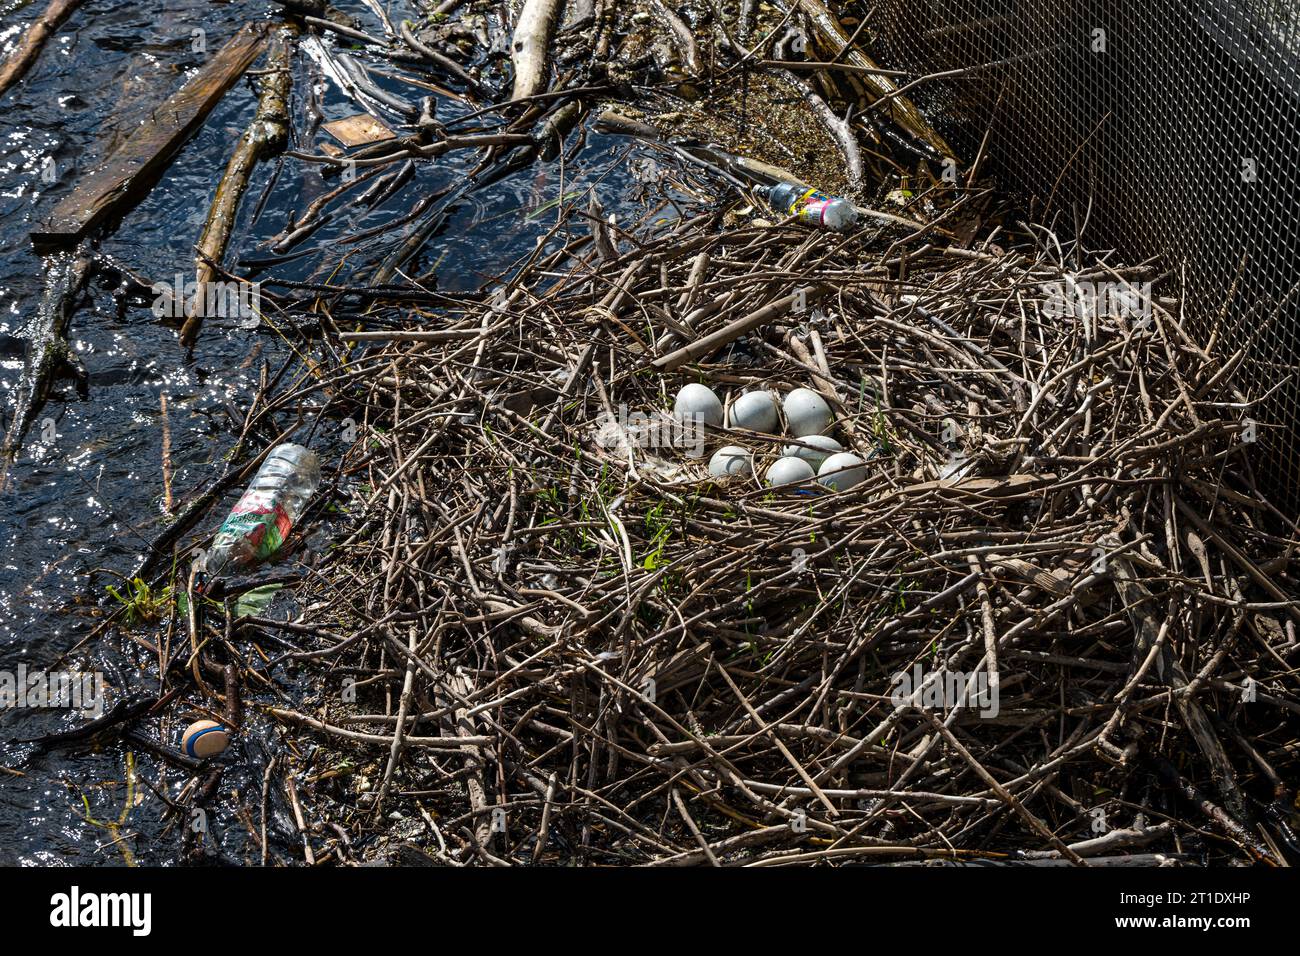 Uova di cigno mute nel nido con spazzatura, fiume Water of Leith, Edimburgo, Scozia, Regno Unito Foto Stock